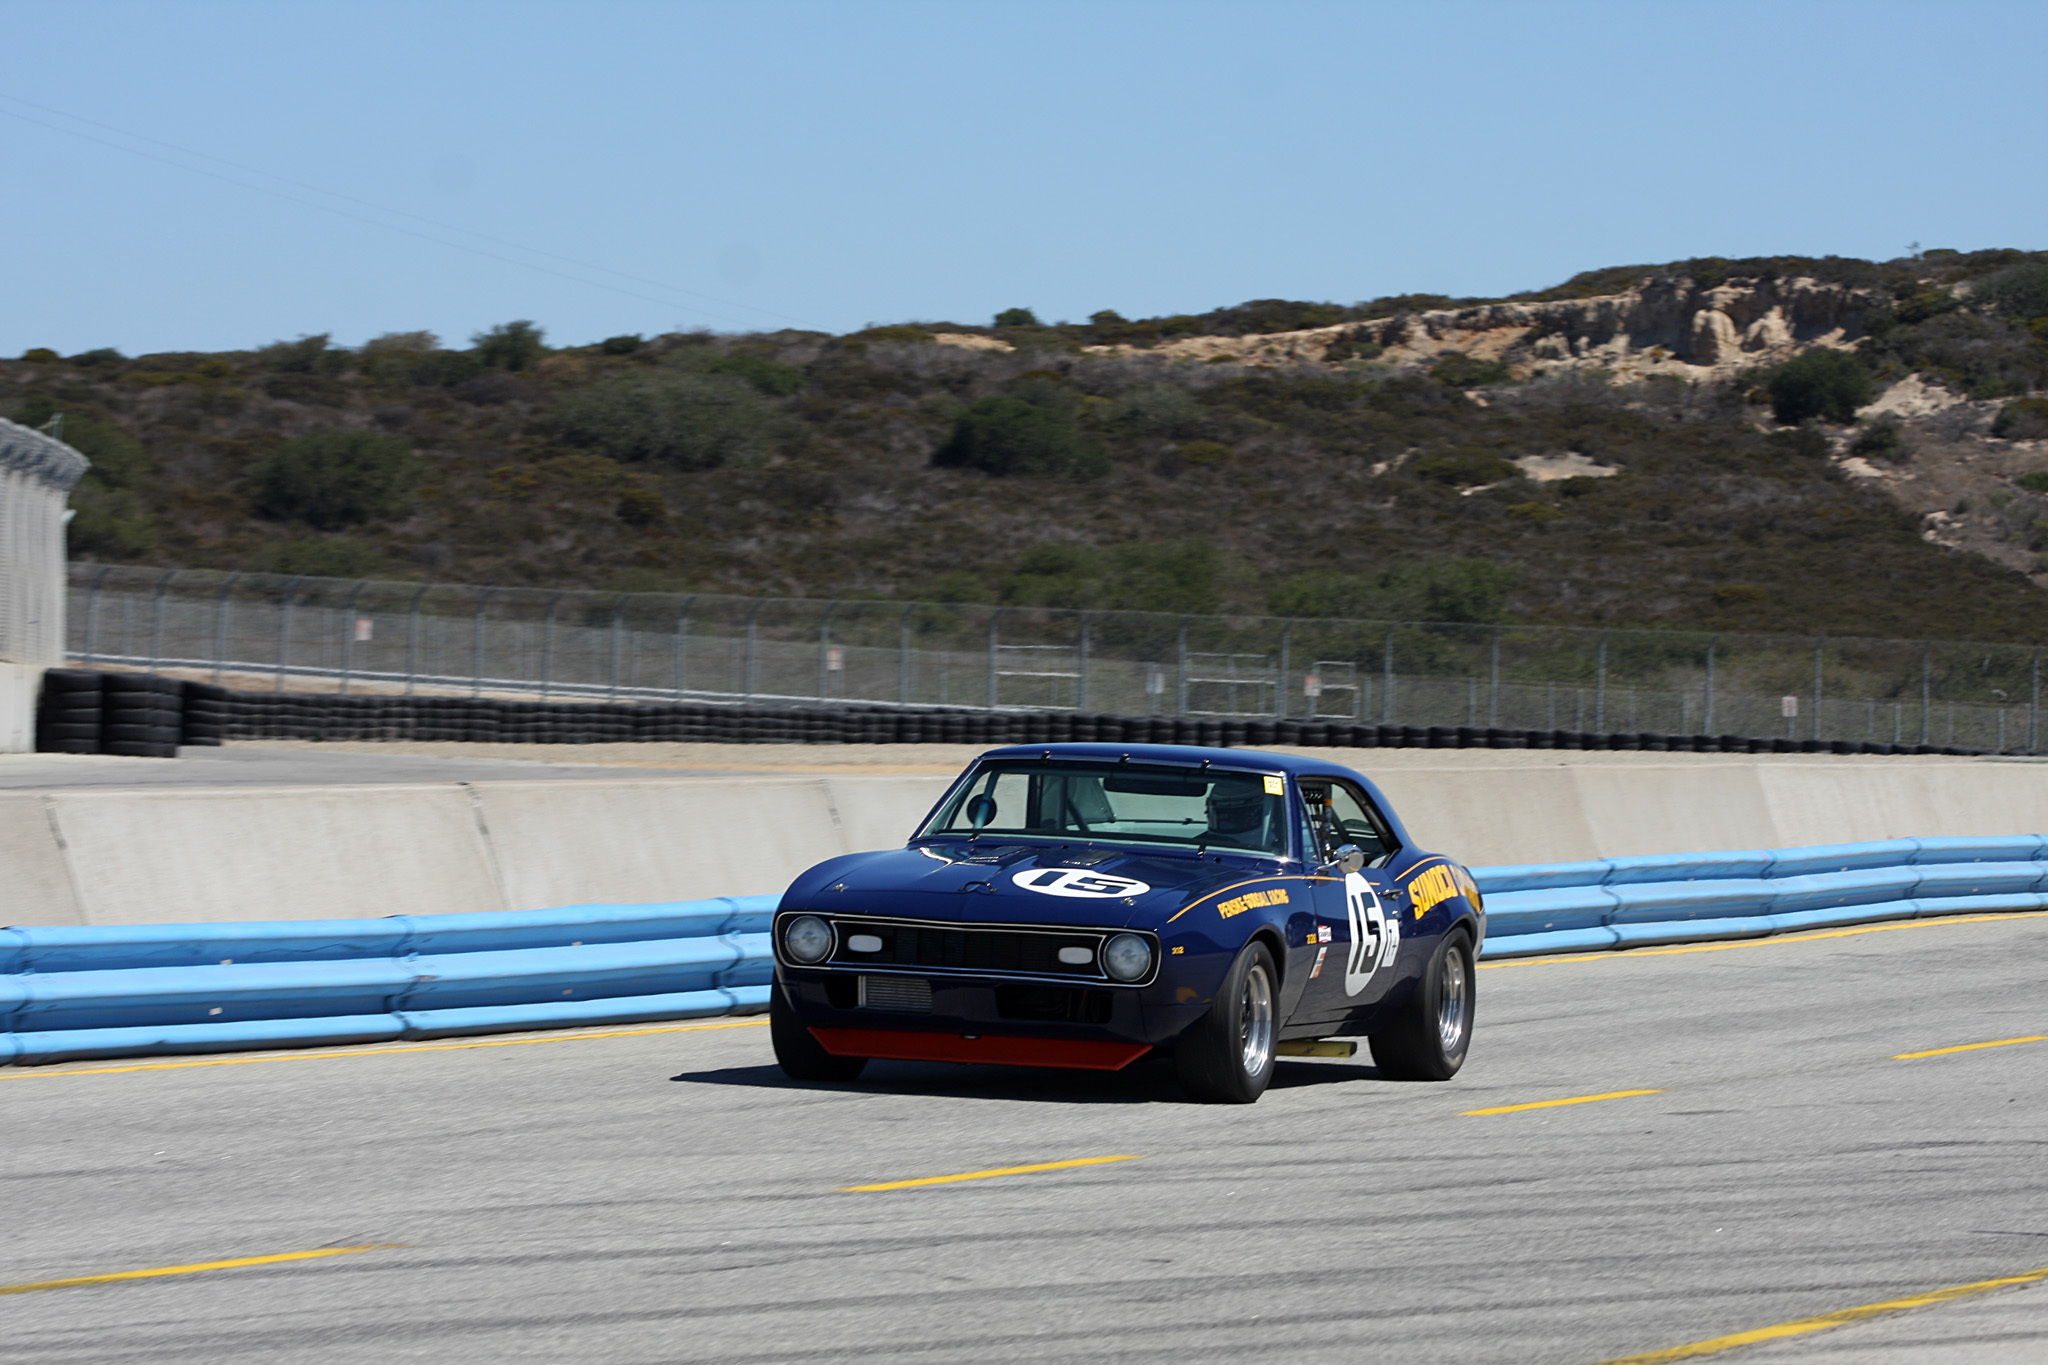 2014 Rolex Monterey Motorsports Reunion-8